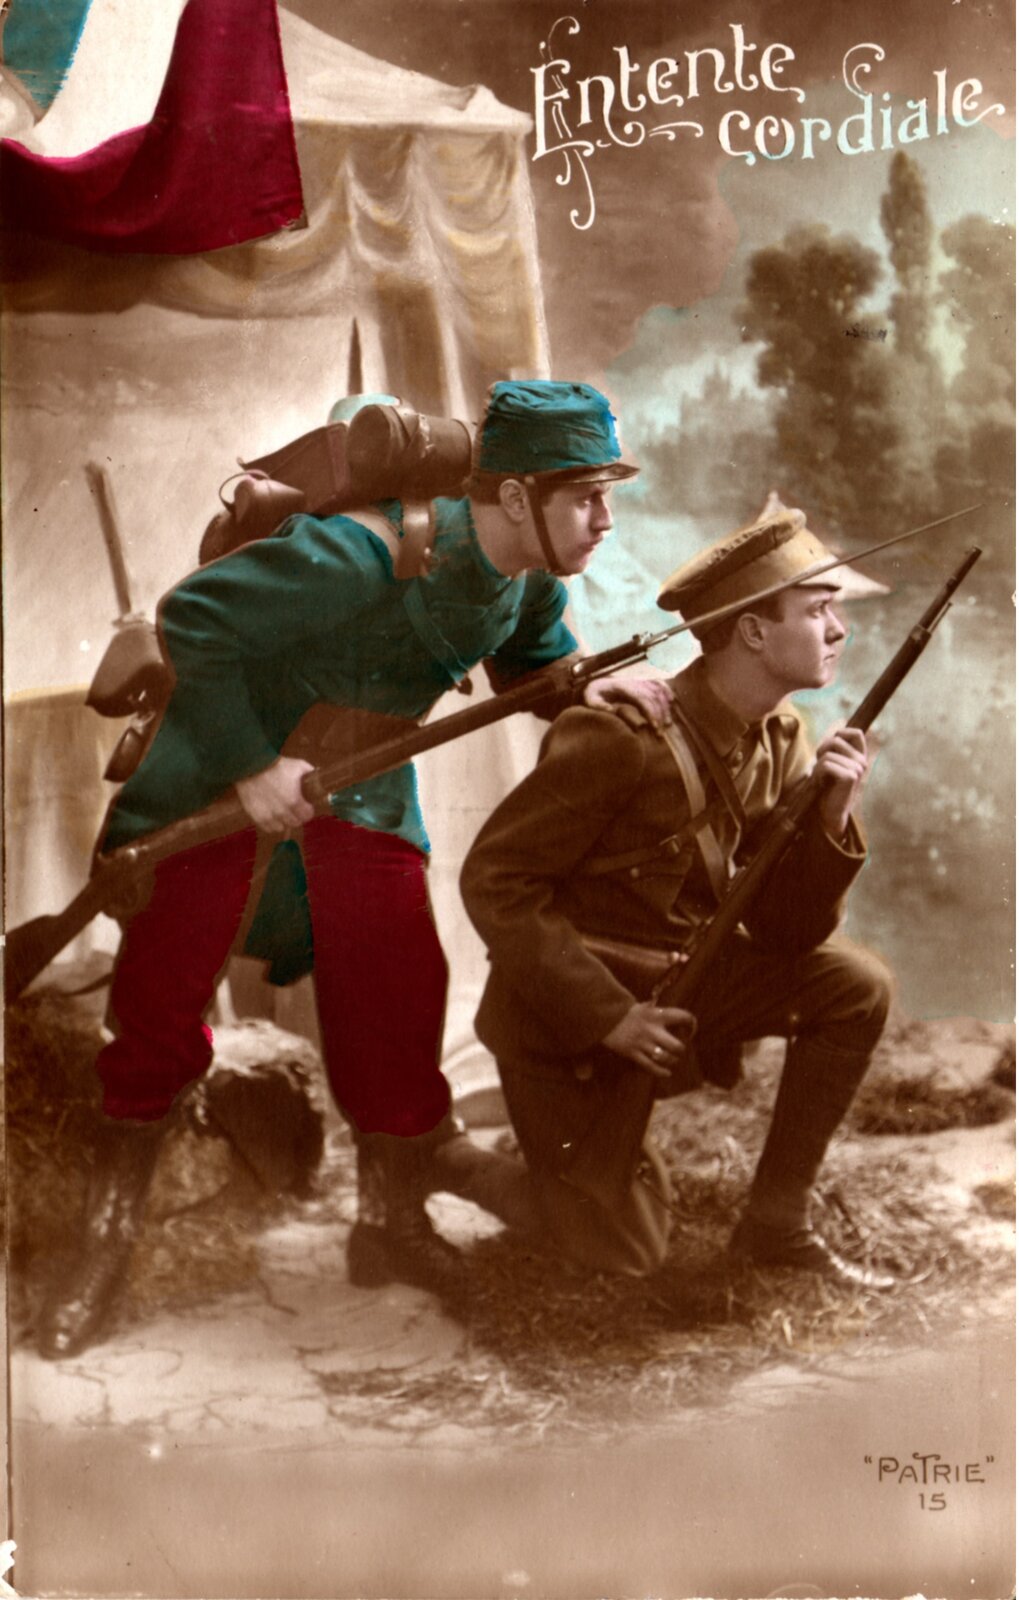 Ilustracja przedstawia dwóch młodych żołnierzy z bronią. Żołnierzy po prawej ma brązowy mundur i przykuca. Żołnierz po lewej ma niebieski mundur, stoi za pierwszym żołnierzem i dotyka jego ramienia. Obydwaj patrzą w prawą stronę zdjęcia. Za nimi znajduje się namiot, w tle widoczne są smugi dymu. Na górze plakatu jest napis w języku francuskim: Entente Cordiale.